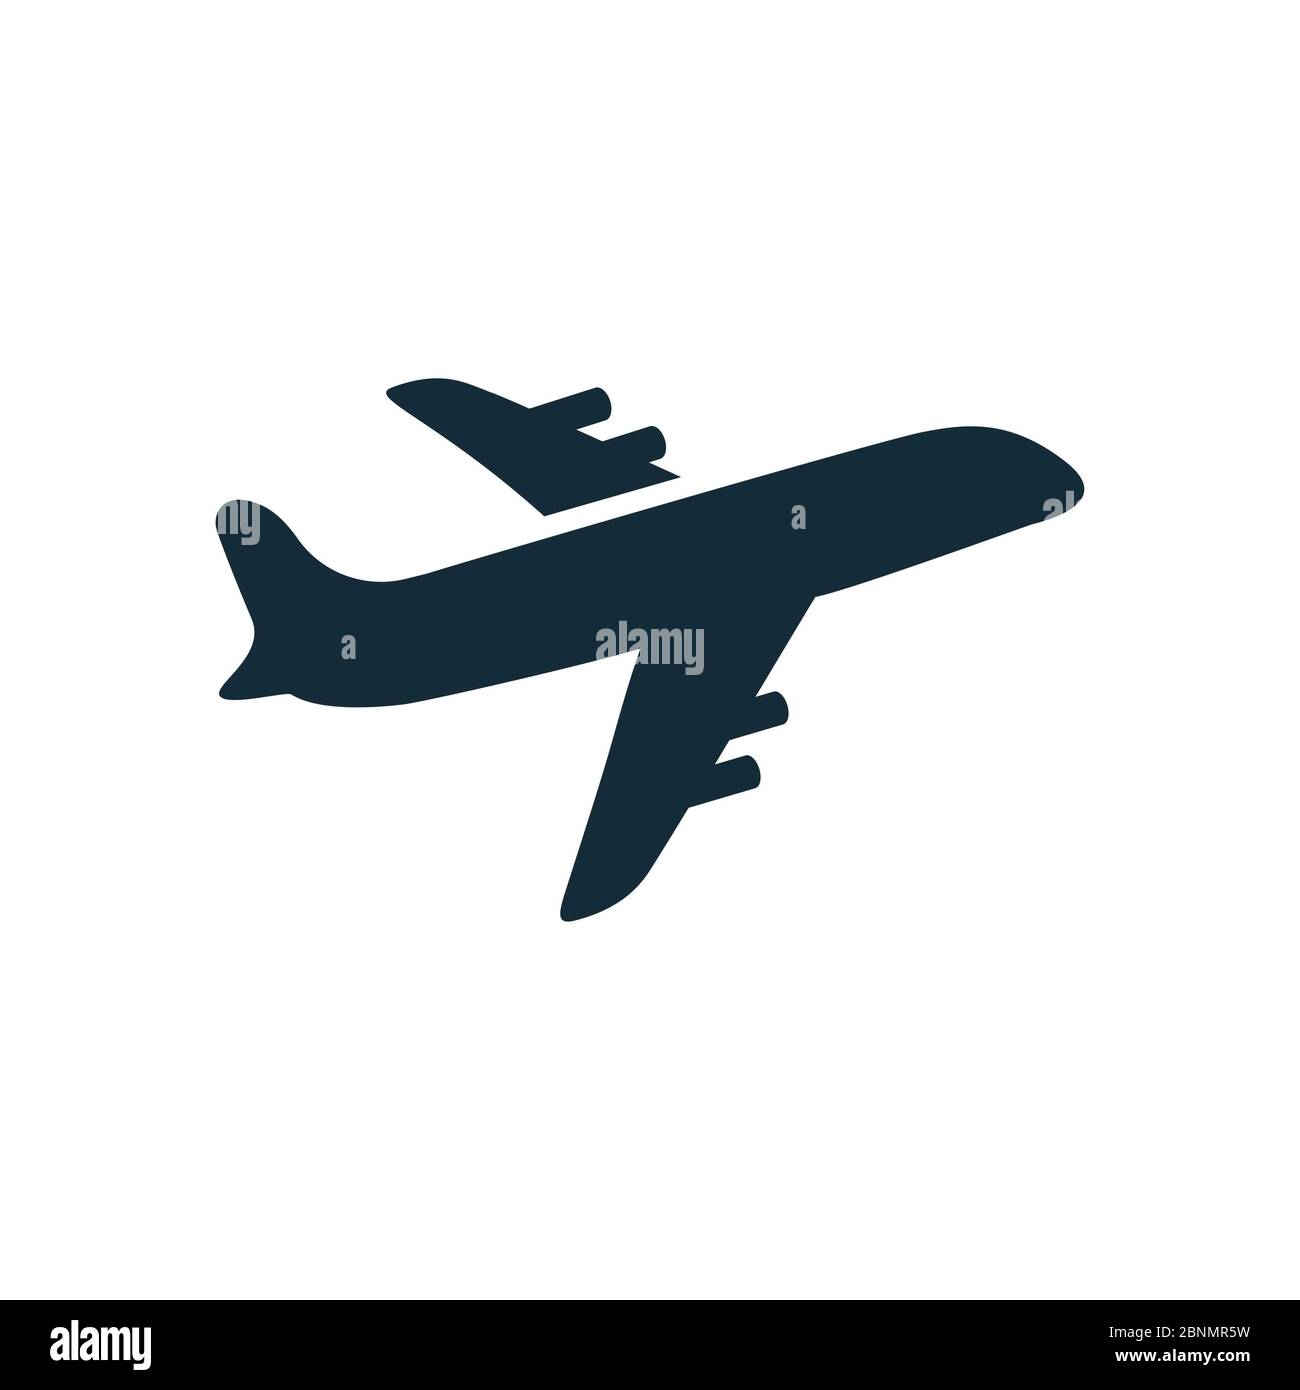 Modèle de logo Vector Transportation d'icône d'avion Banque D'Images